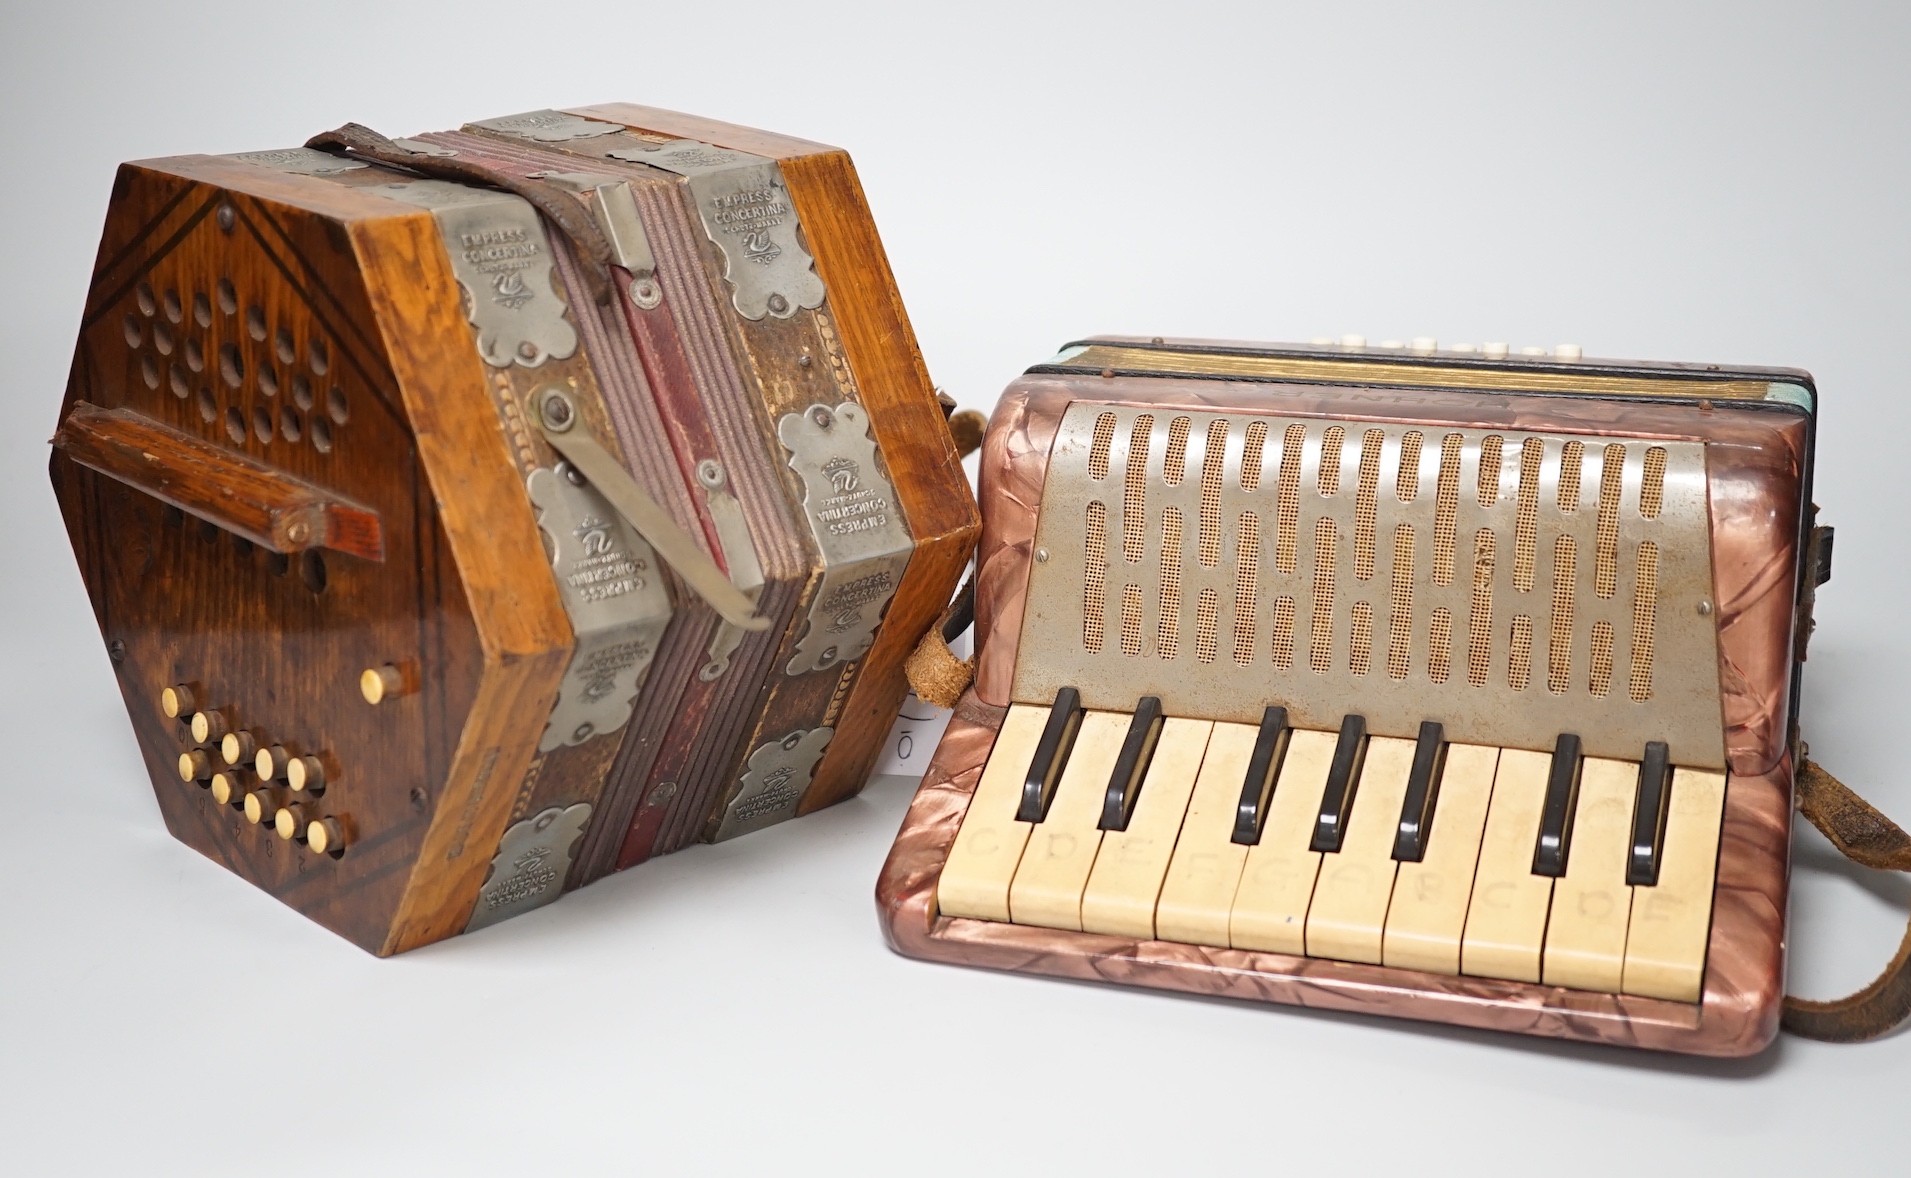 A Hohner Mignon accordion and an Empress concertina